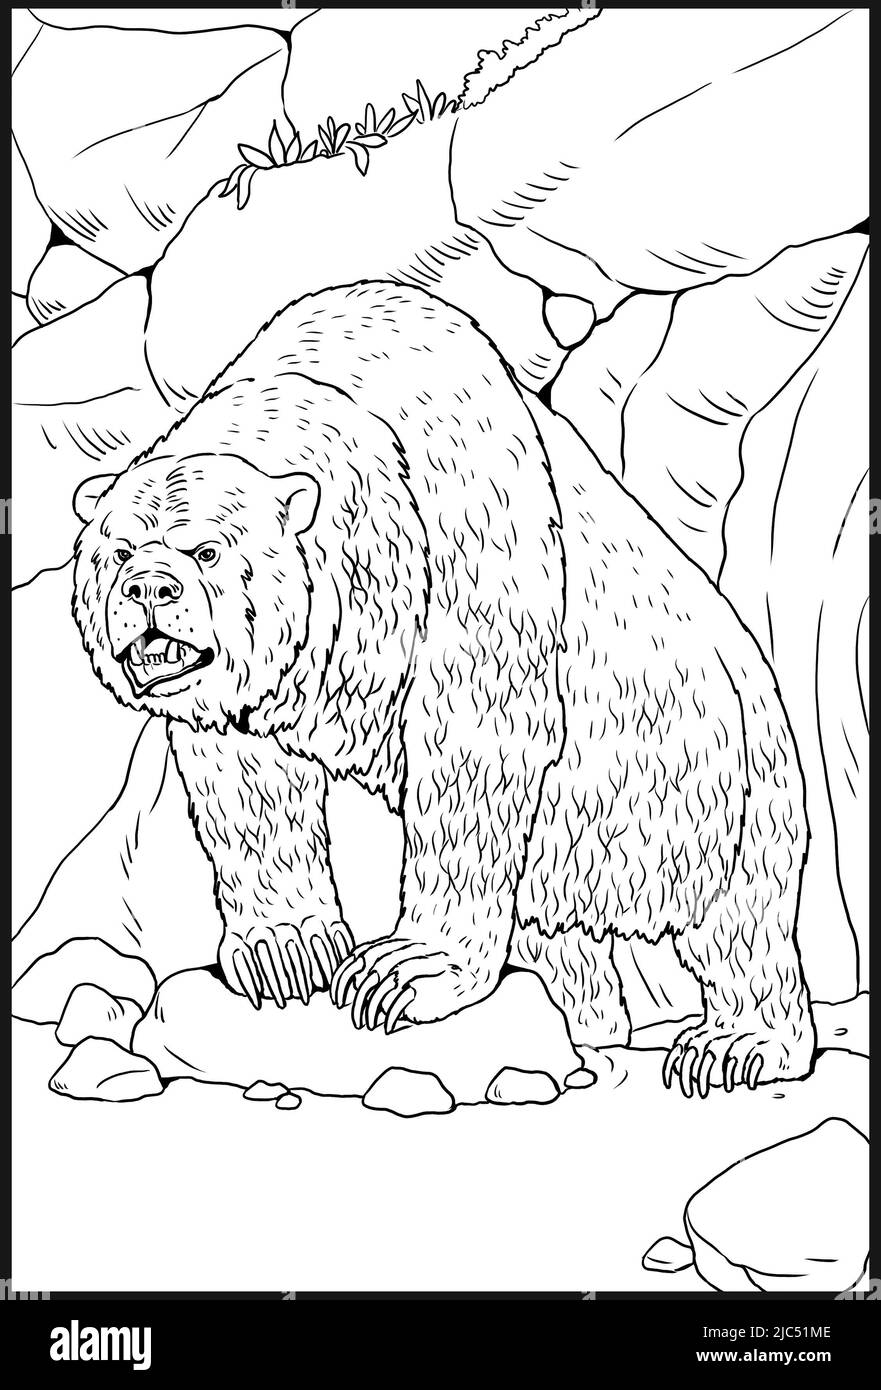 Animaux préhistoriques - ours grotte. Dessin avec des animaux éteints. Modèle pour livre de coloriage. Banque D'Images